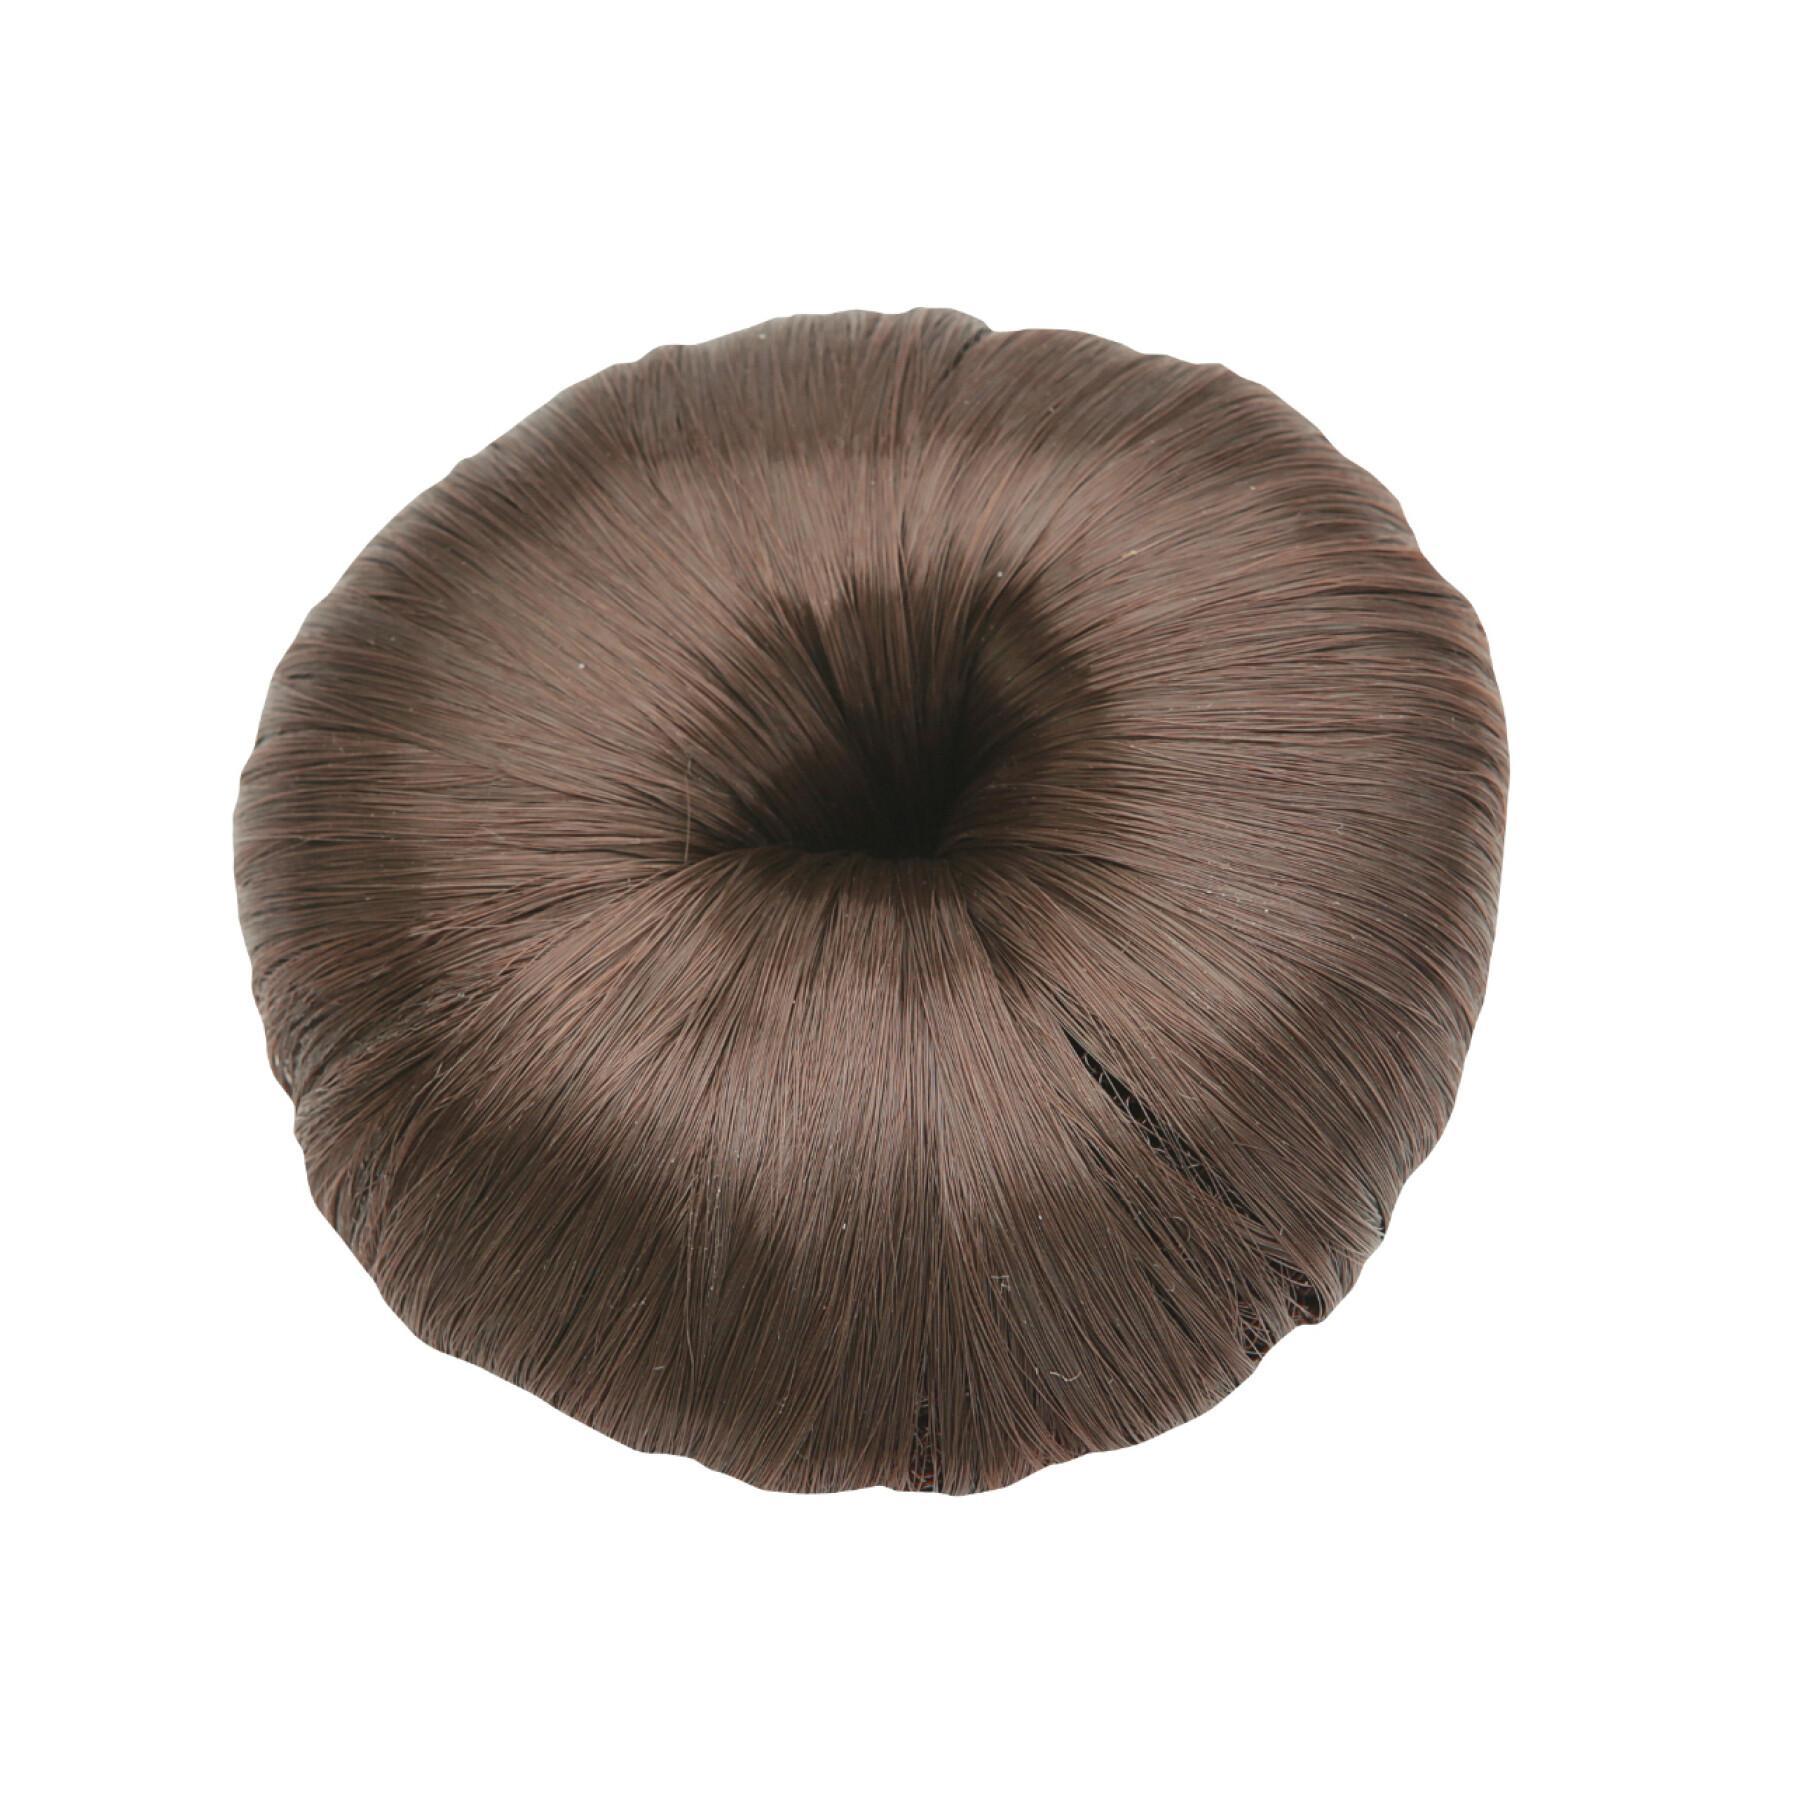 Female hair doughnut Horka Deluxe